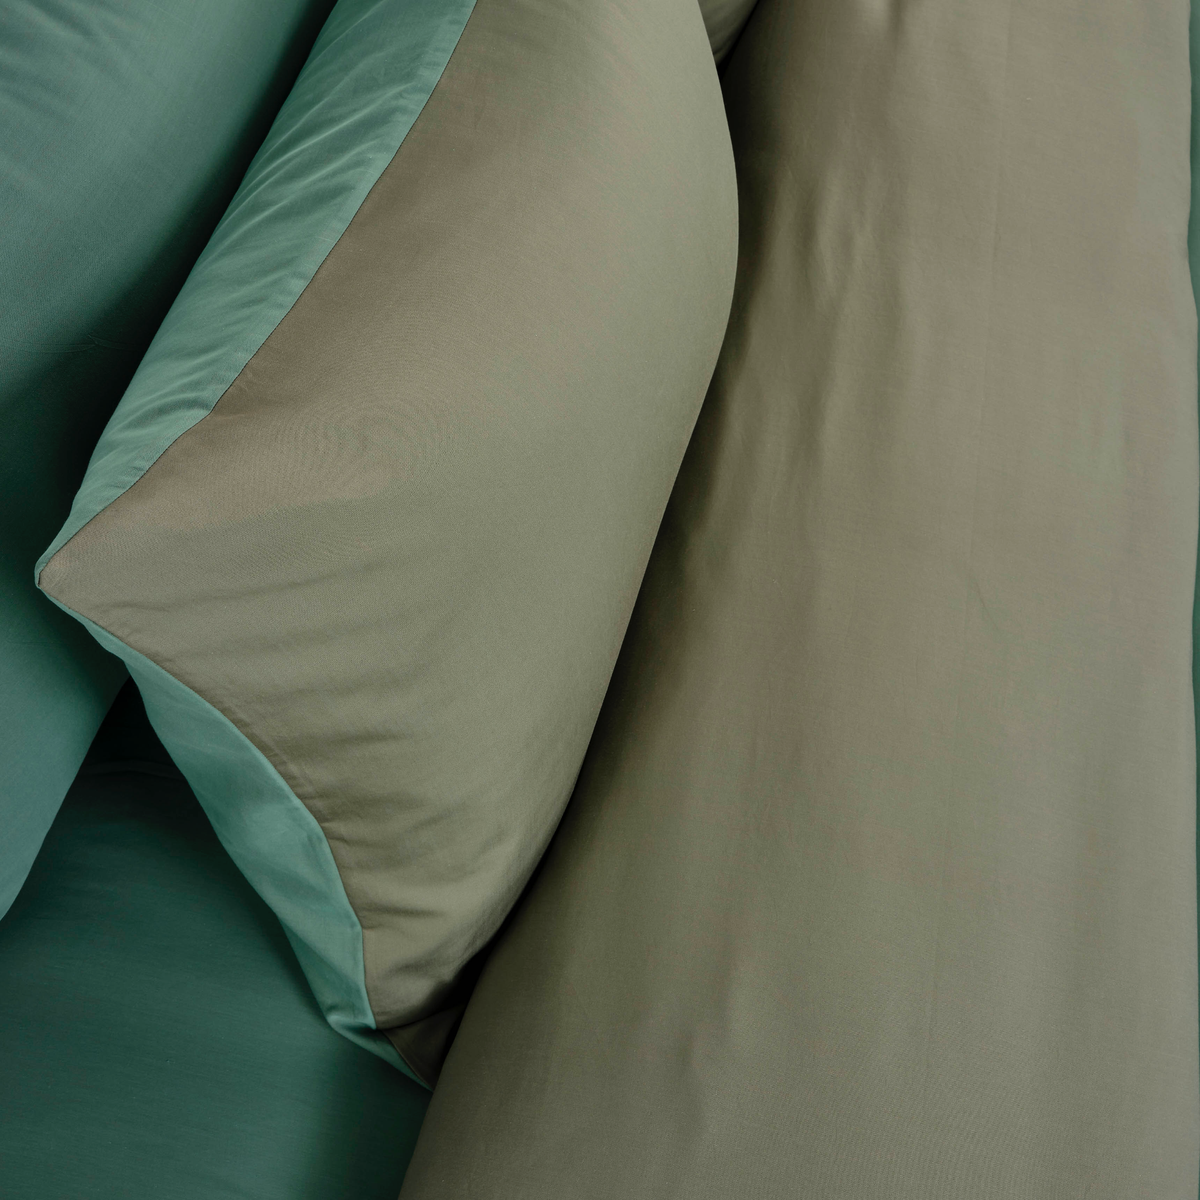 Pillowcase Closeup of Celso de Lemos Calypso Bedding in Jade Color